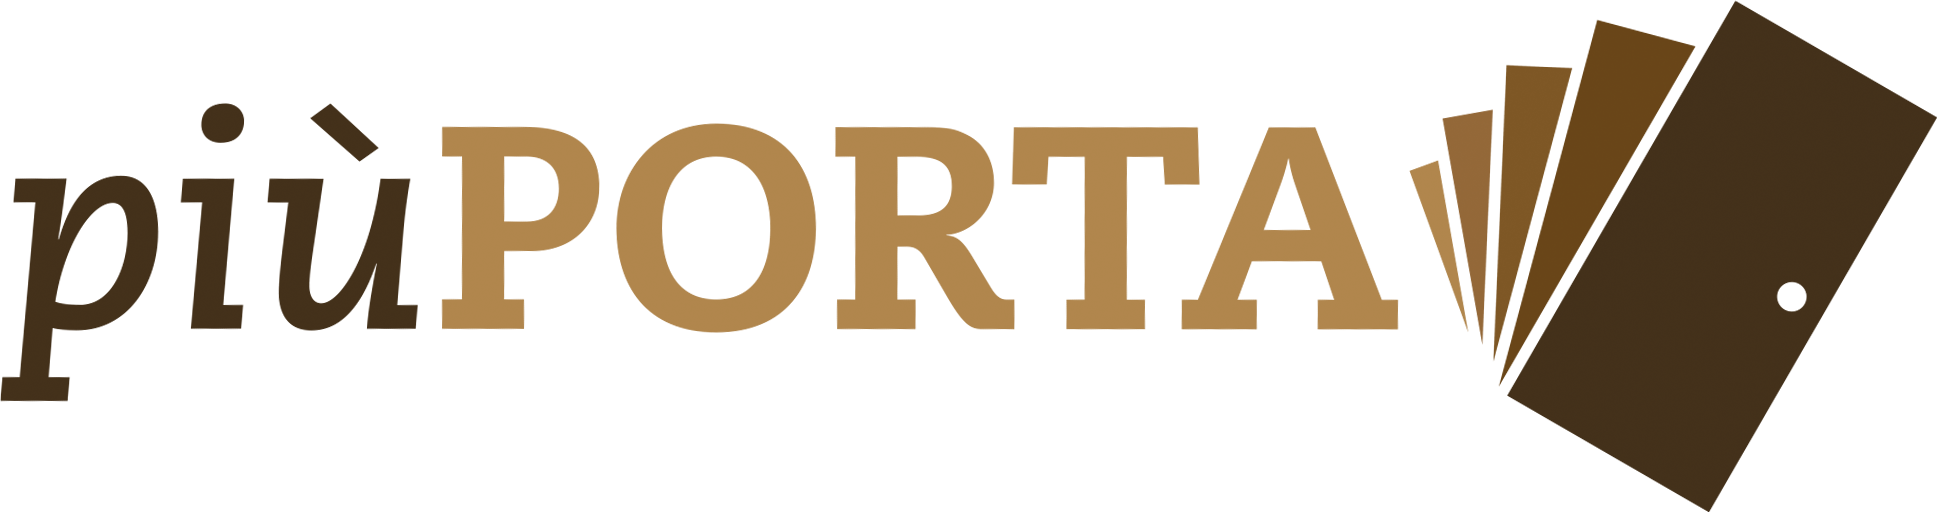 Più Porta by Braga - Assemblaggio e distribuzione semilavorati per porte